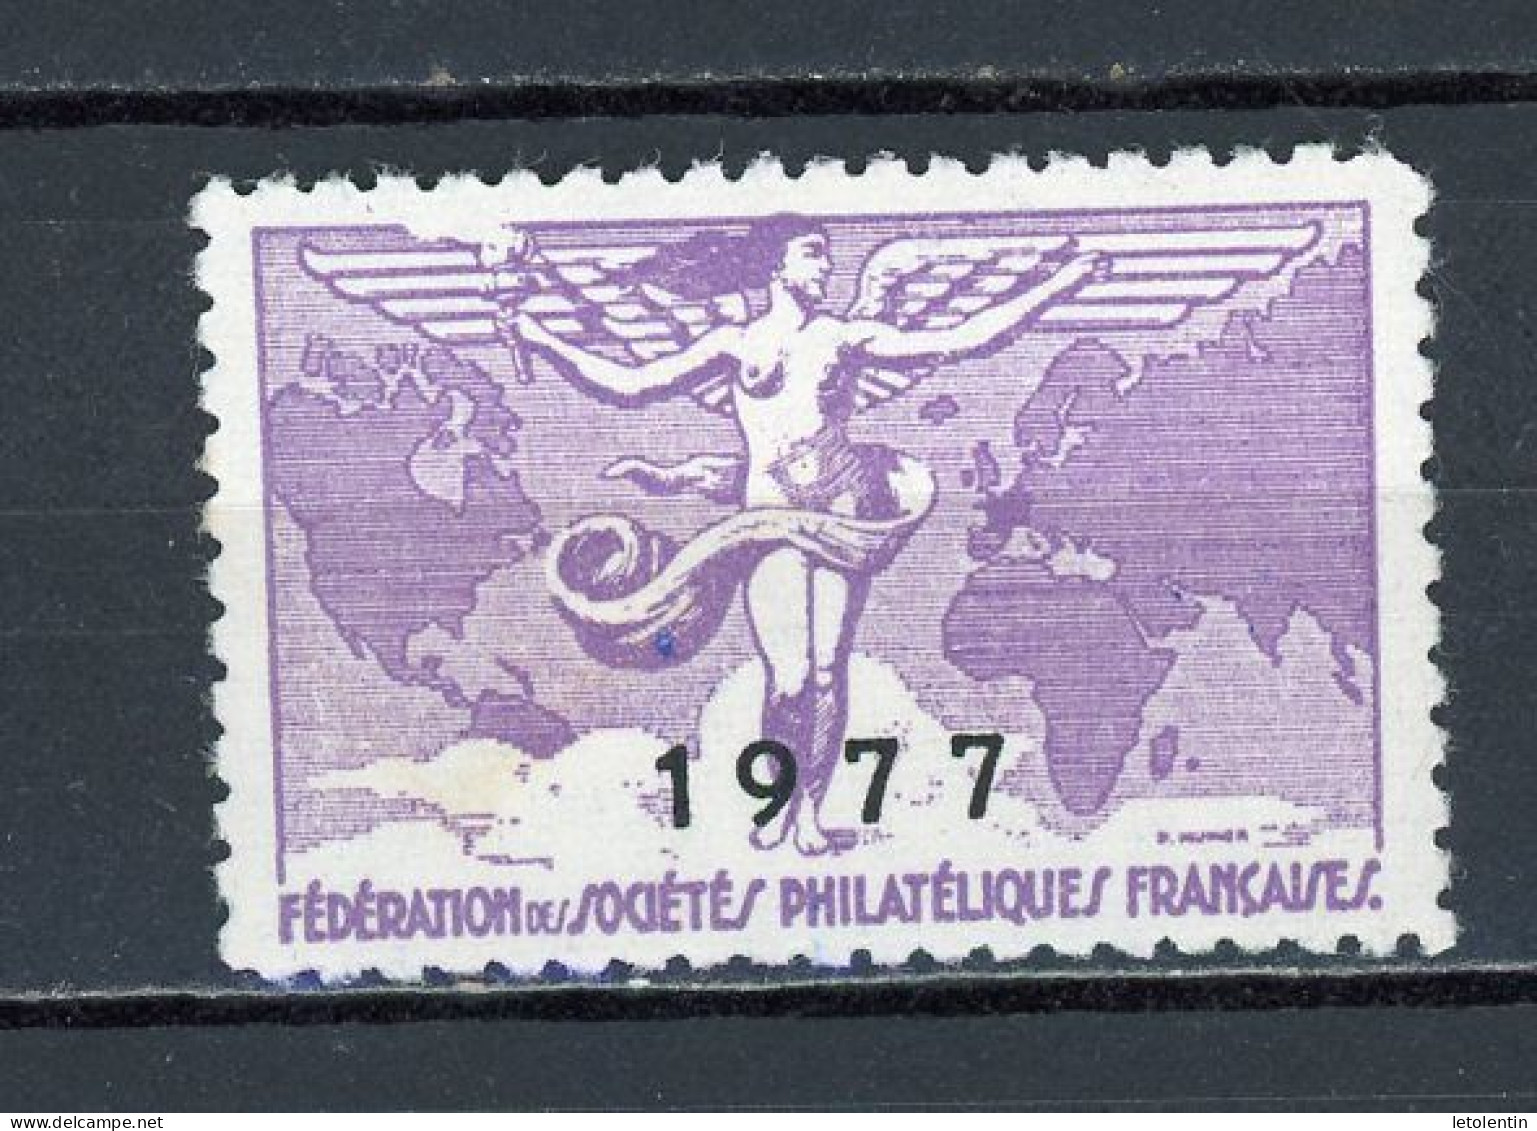 FEDERATION DES SOCIÉTÉS PHILATÉLIQUES FRANÇAISES 1977 * - Exposiciones Filatelicas